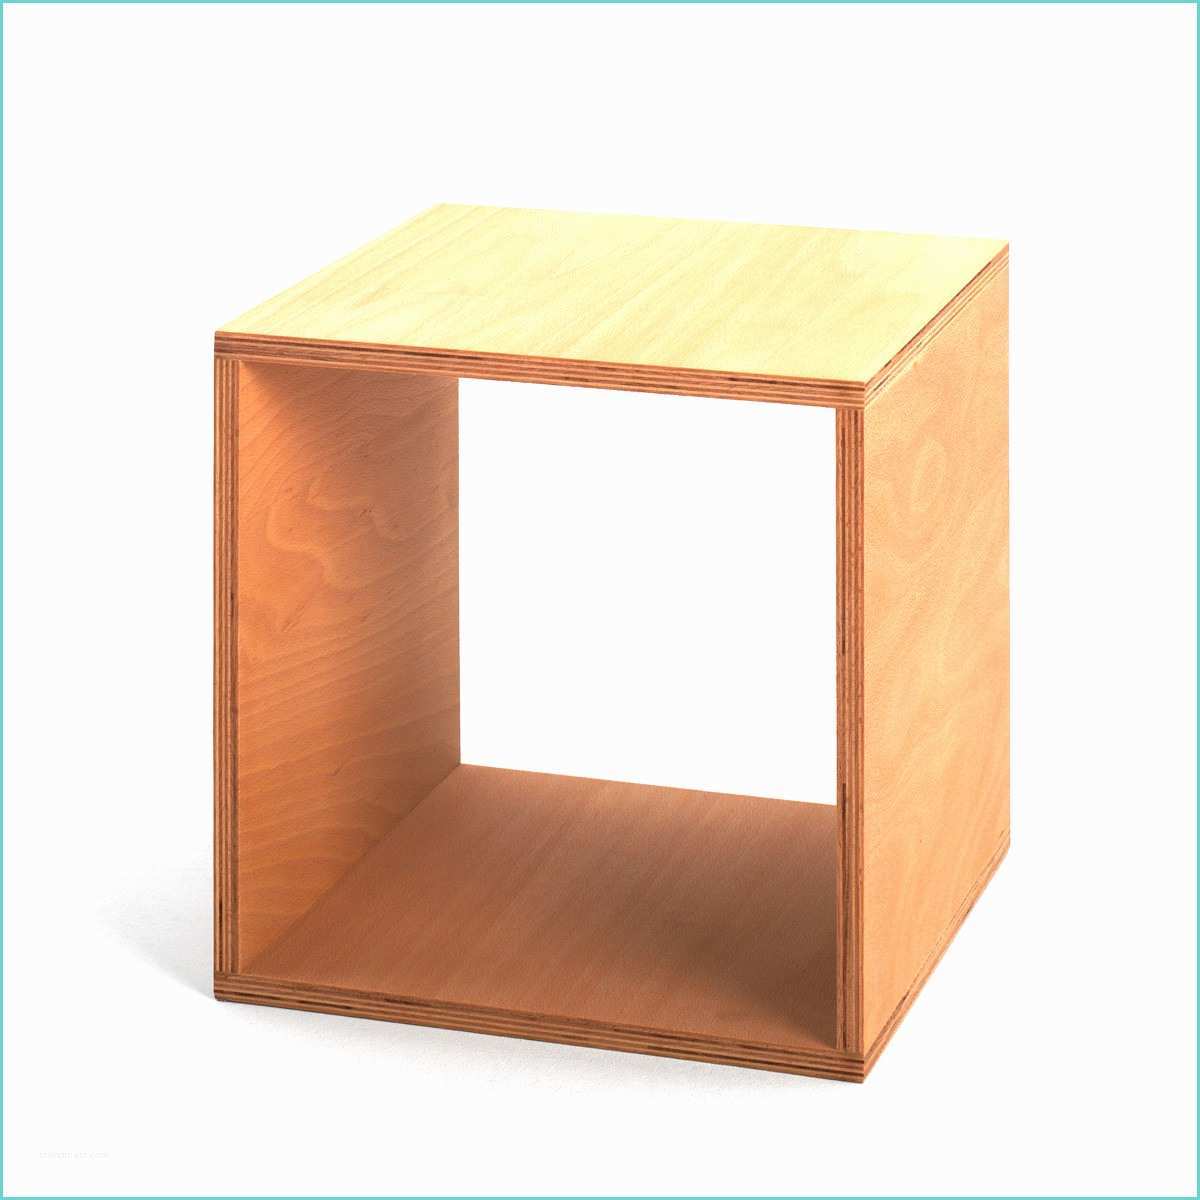 Table De Nuit Cube 41 Table De Nuit Cube Idees